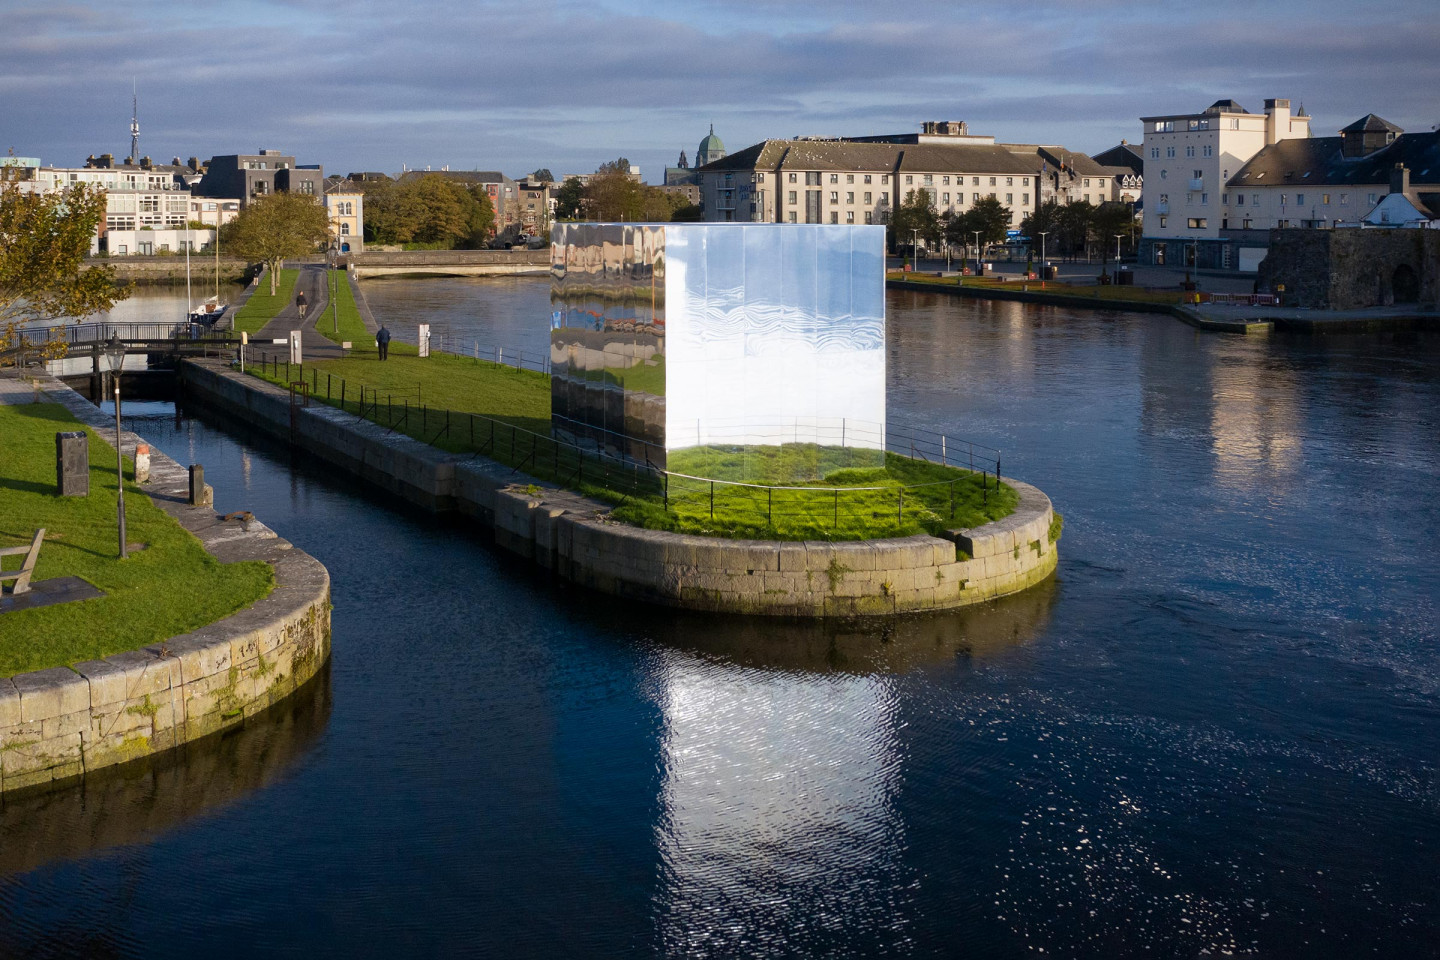 Mirror Pavillion, Galway - Ireland